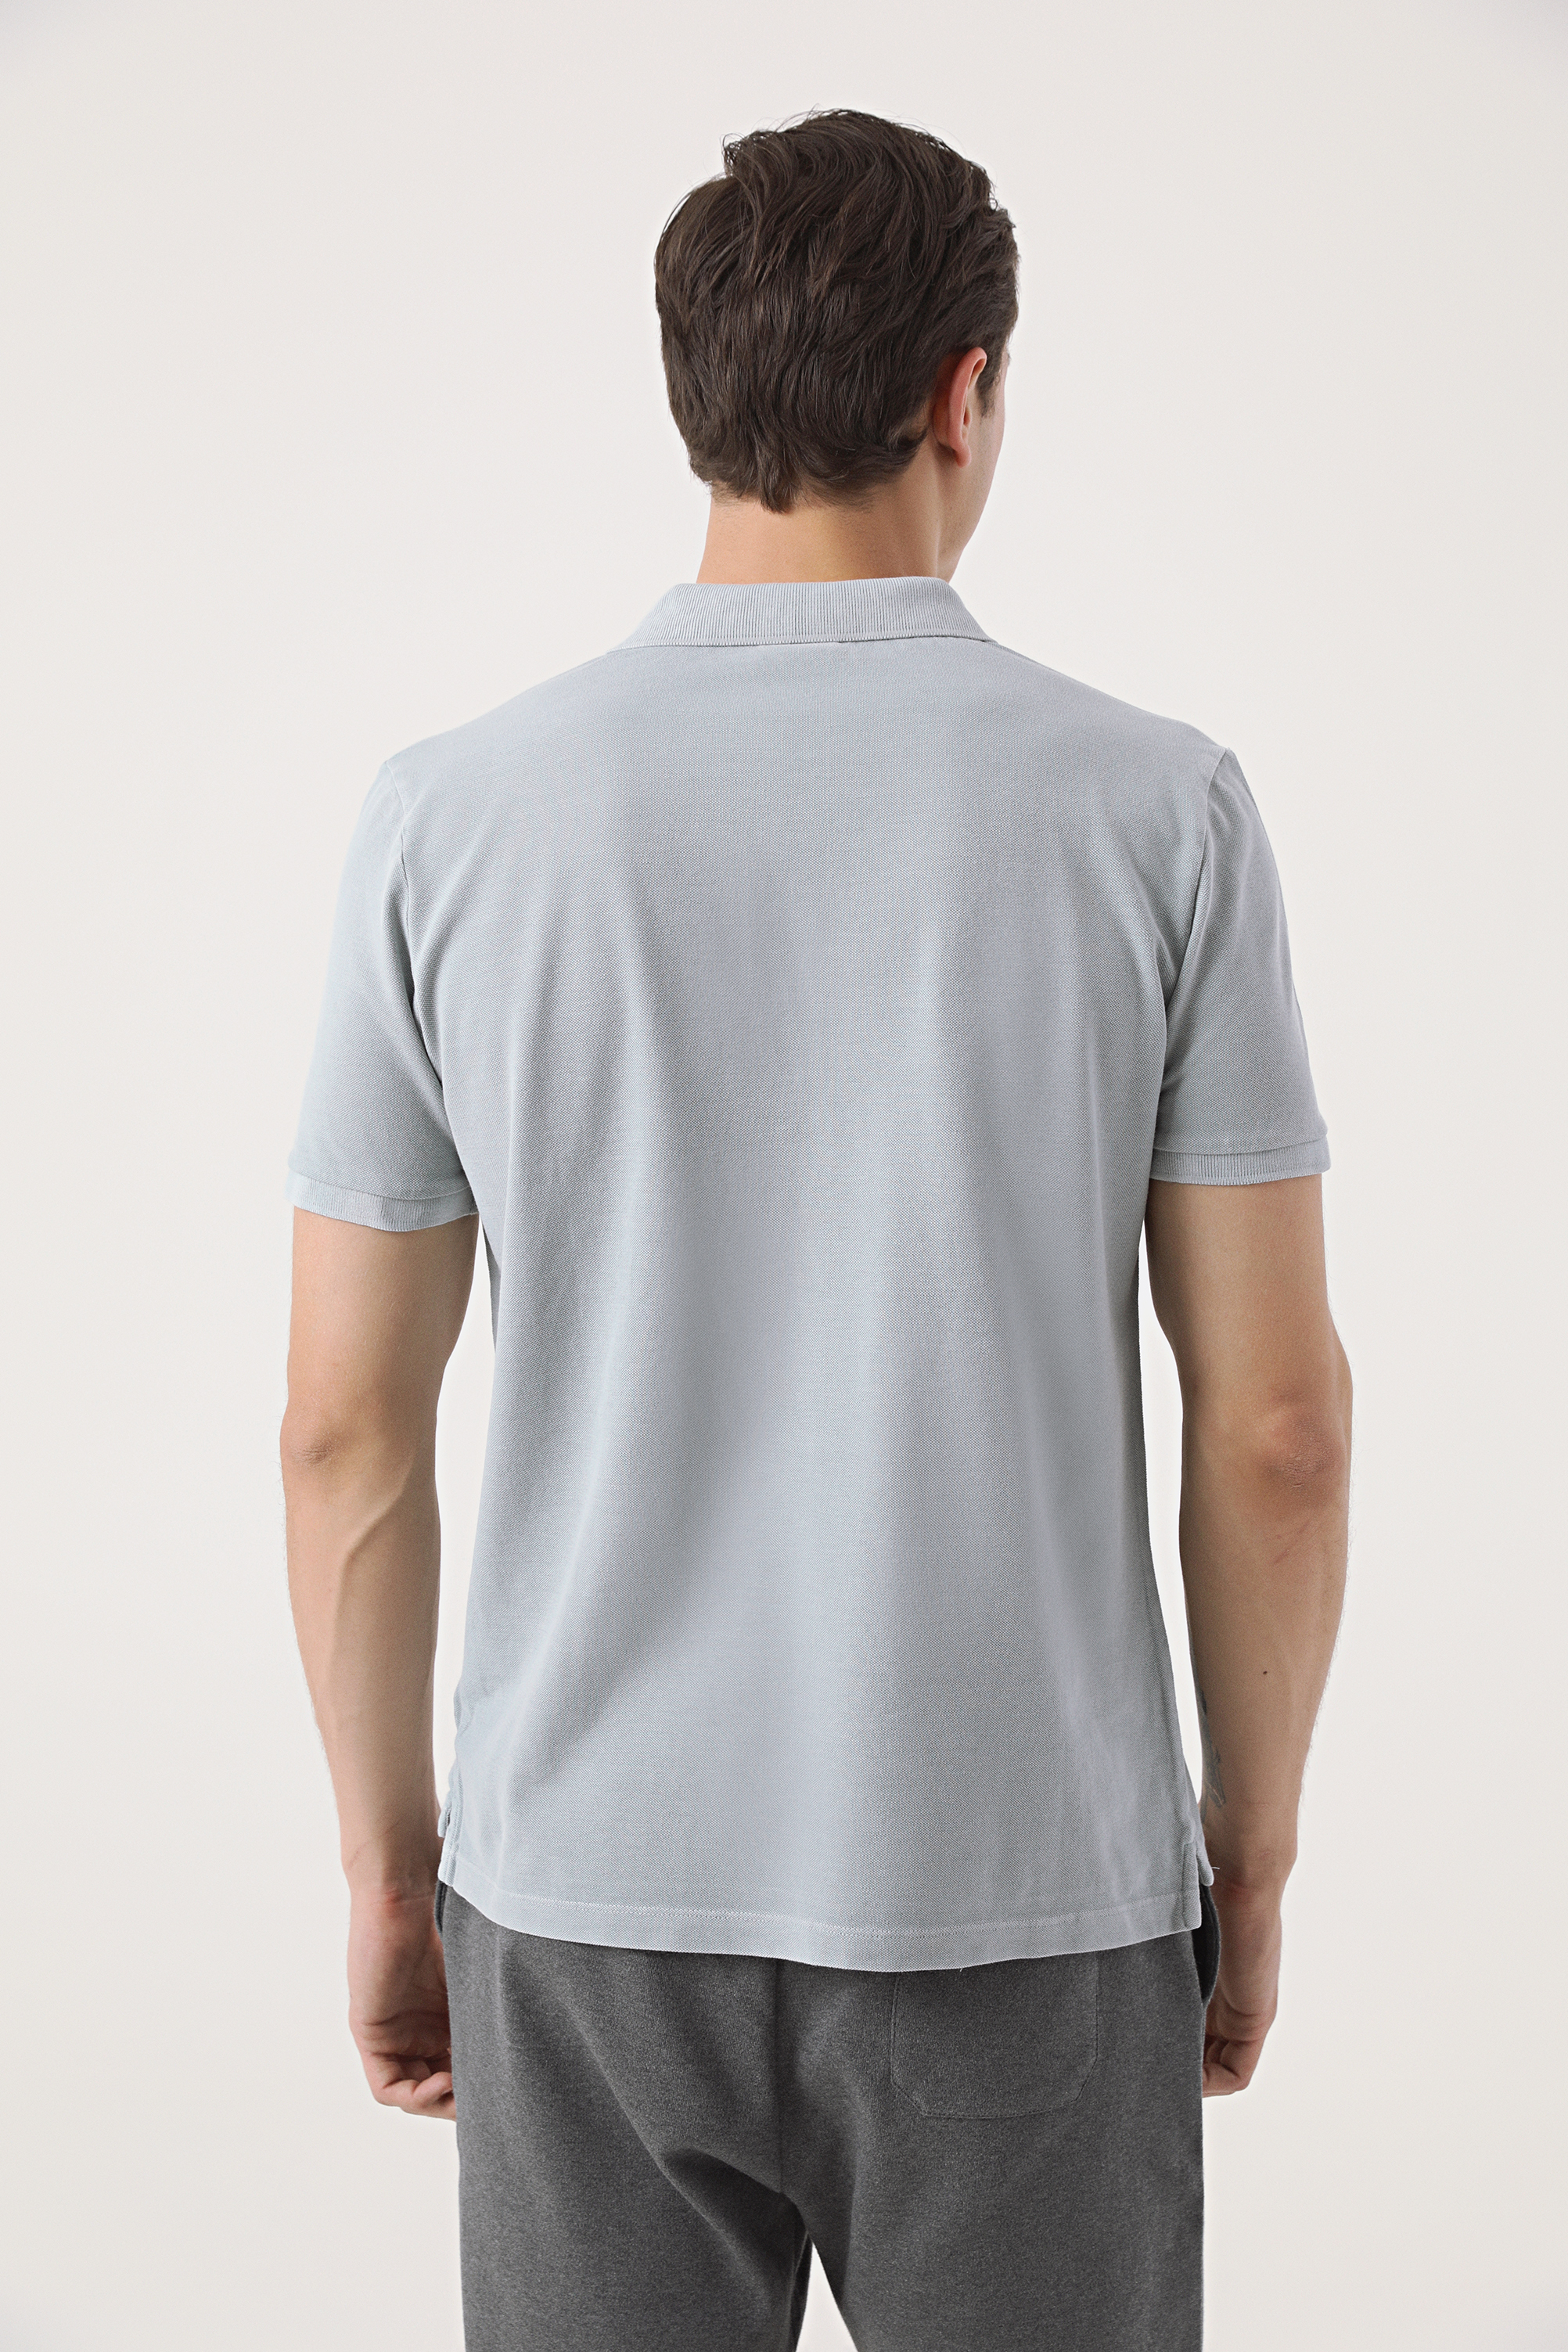 Damat Tween Damat Gri 60/2 Merserize T-Shirt. 4